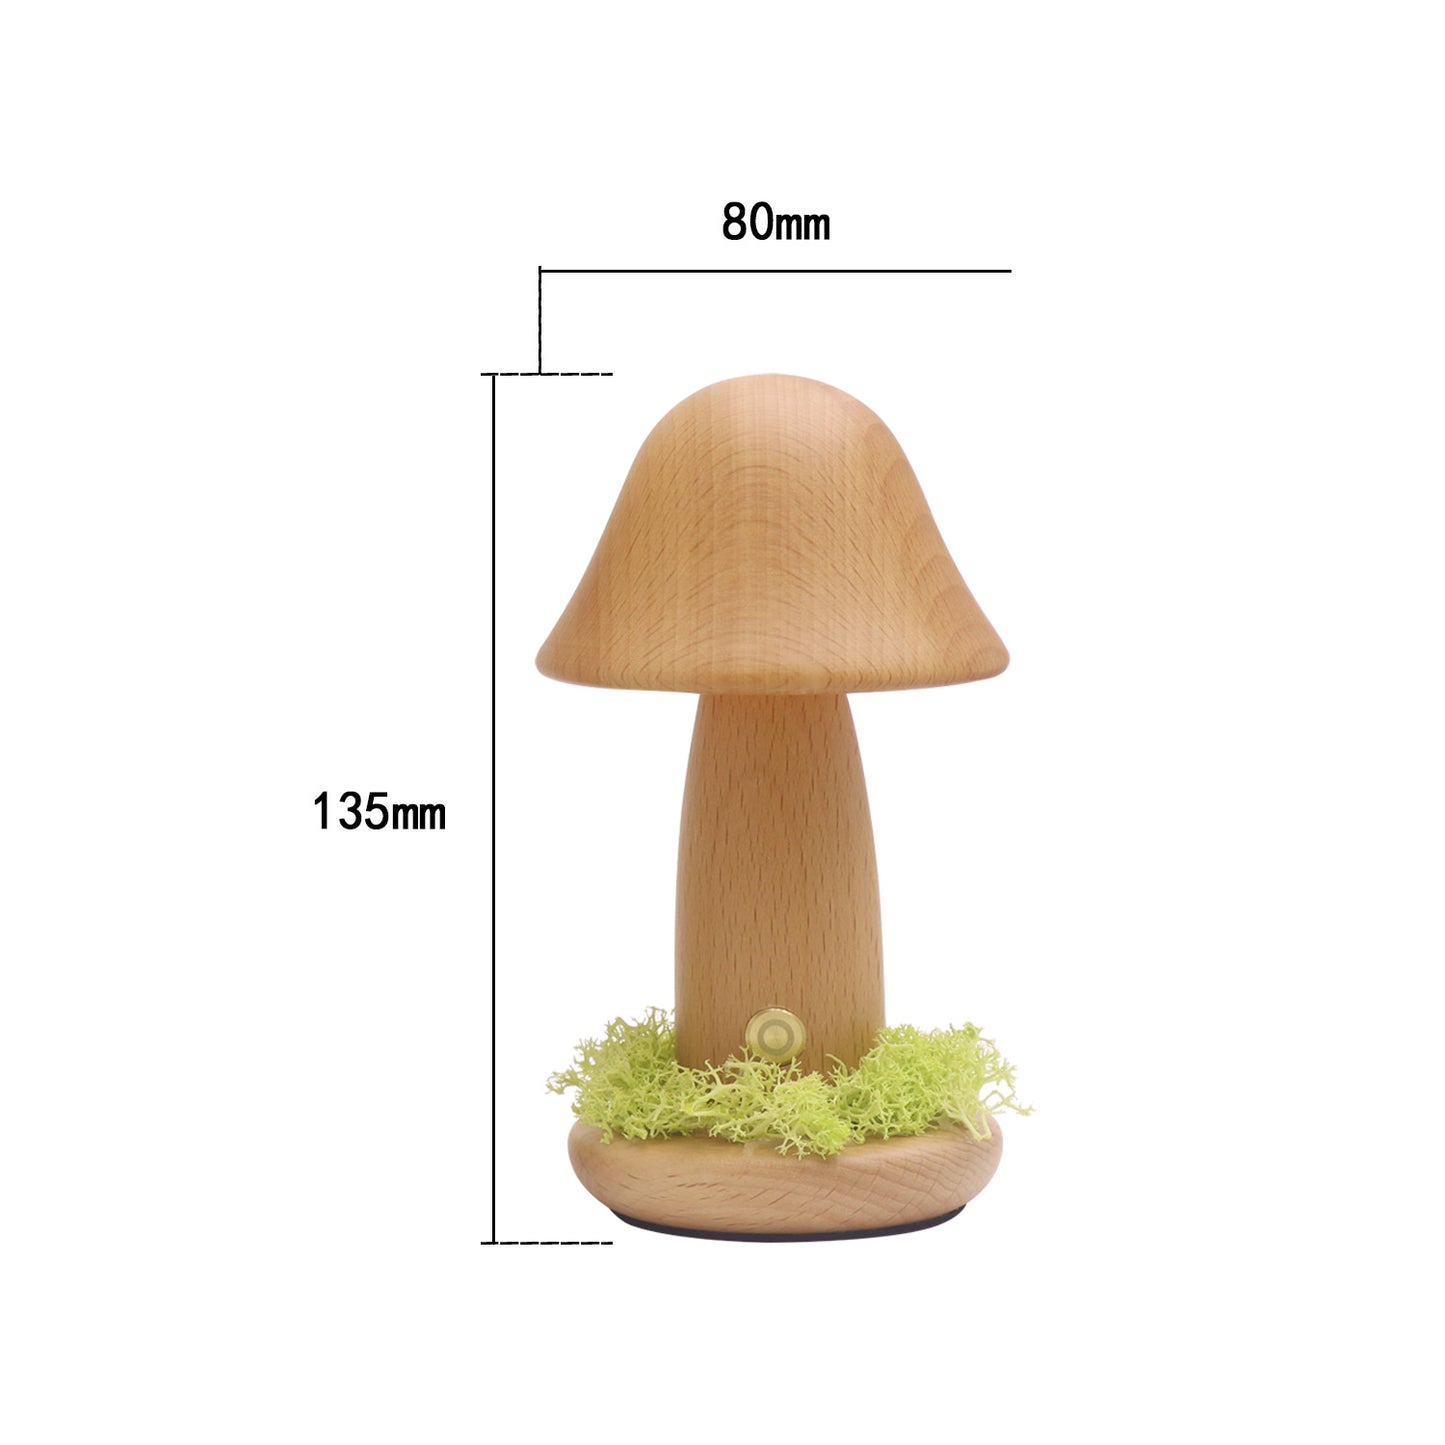 LED USB Twisted Mushroom Night Light Atmosphere Lamps